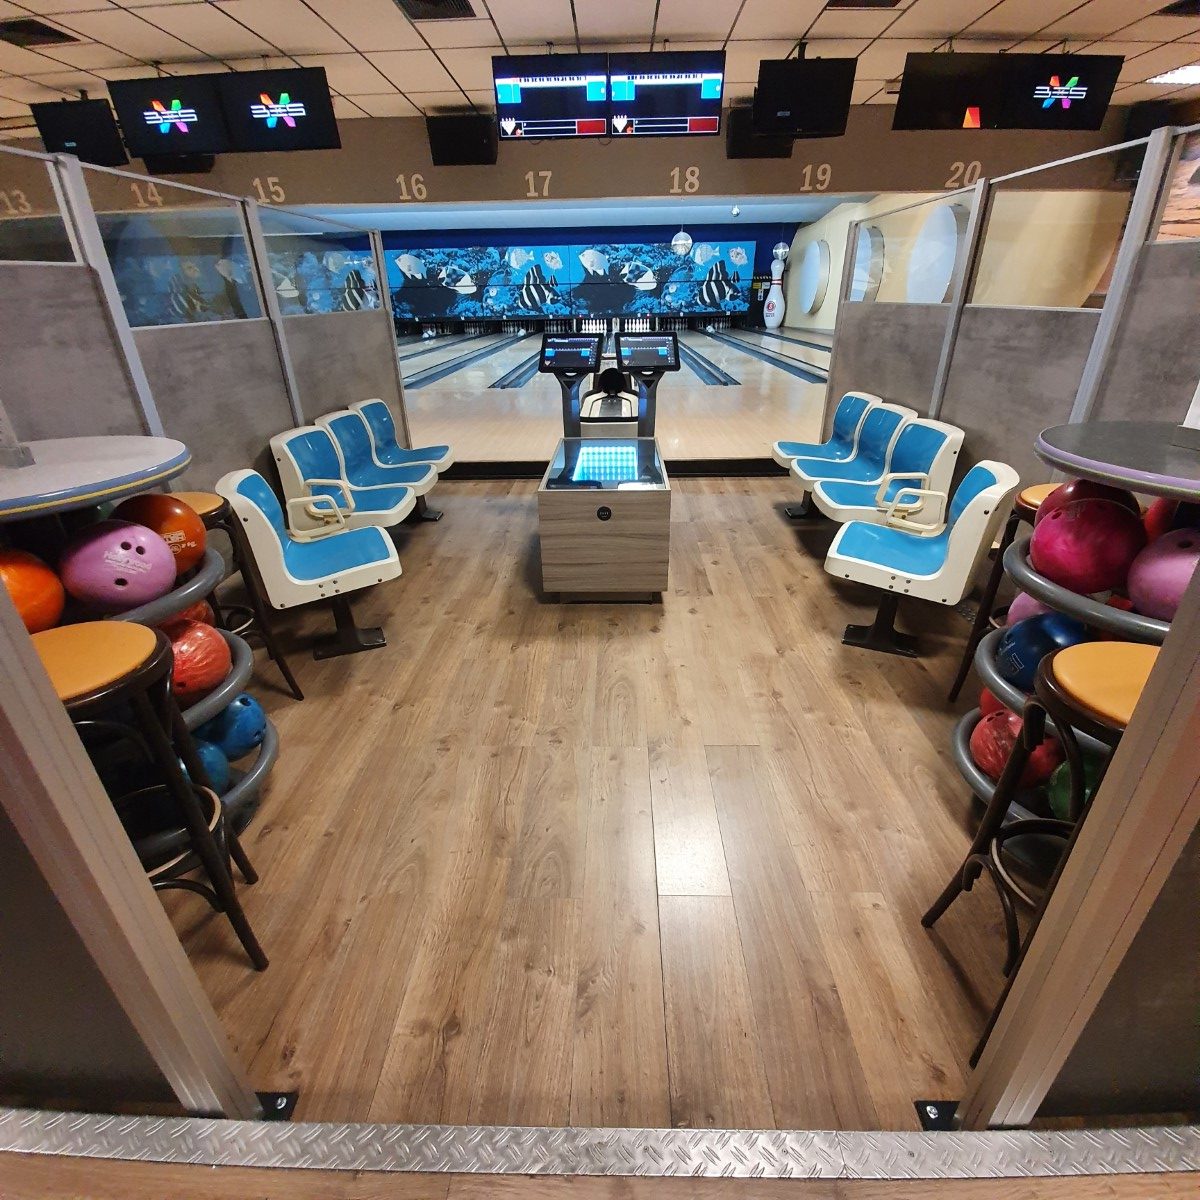 Bowlingbahn und Sitzbereich mit Kugeln und Bildschirmen